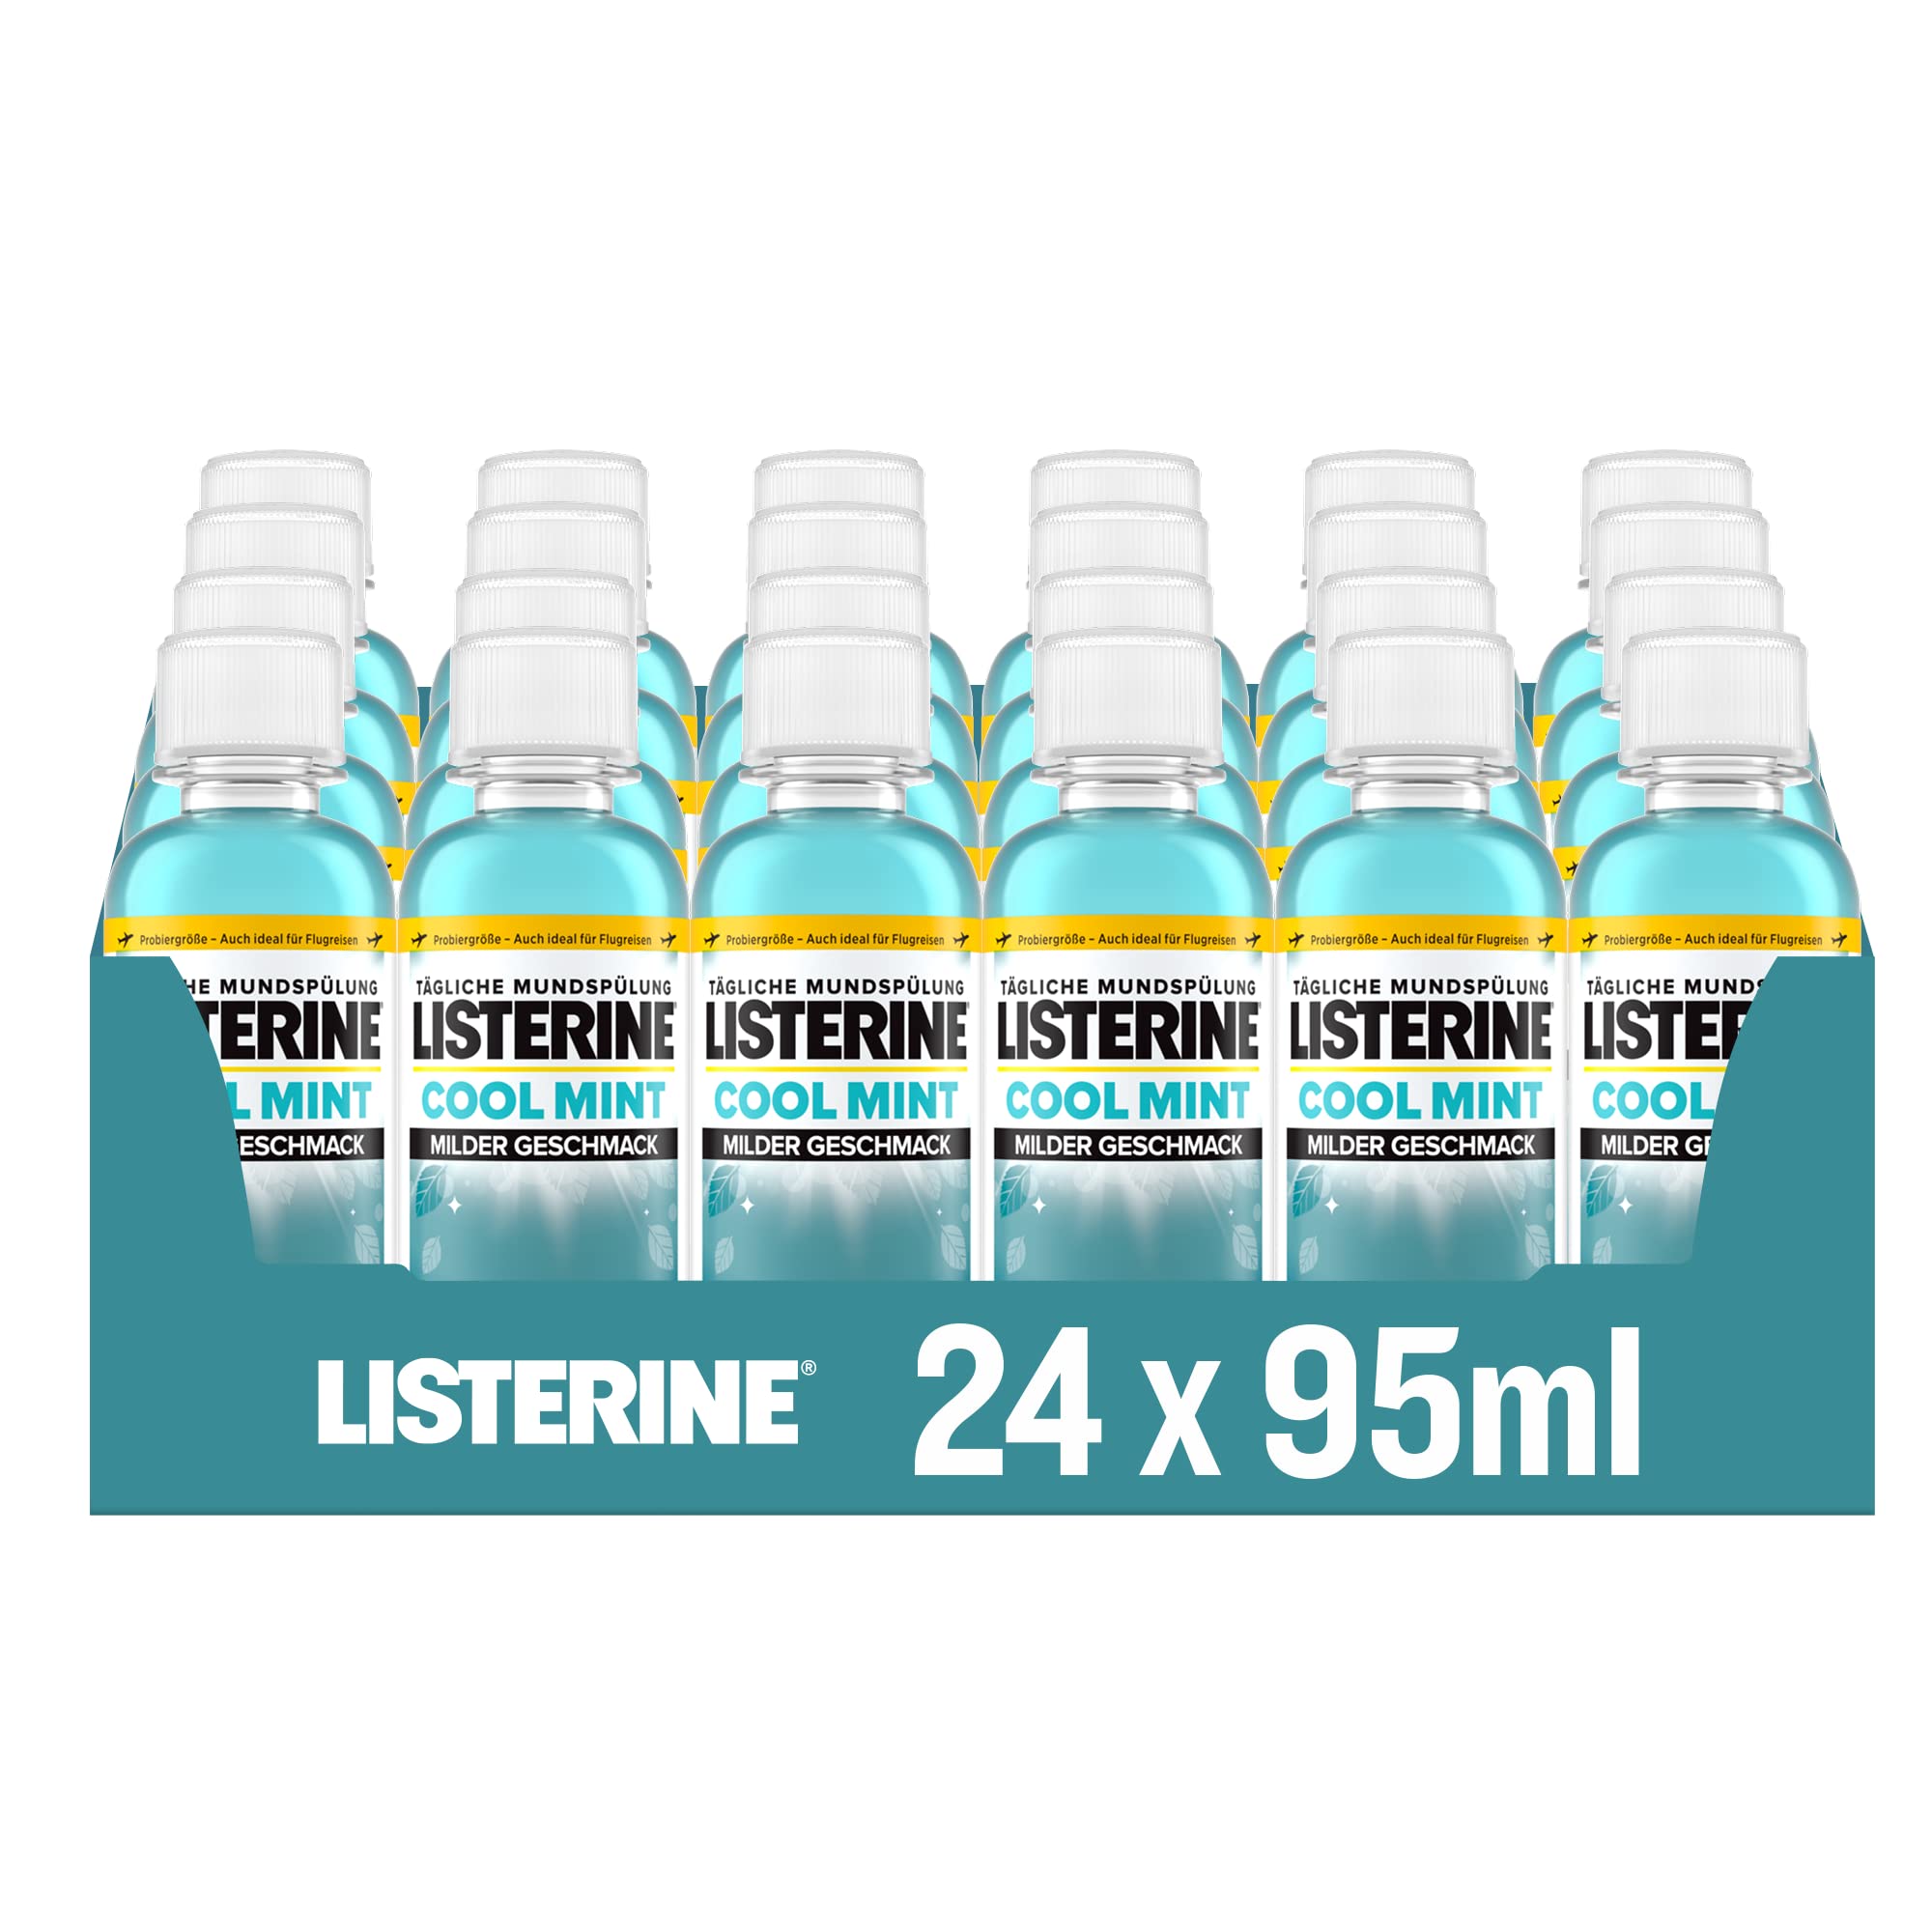 Listerine Cool Mint milder Geschmack 24x95 ml antibakterielle Mundspülung ohne Alkohol mit ätherischen Ölen, für ein langanhaltendes Frischegefühl